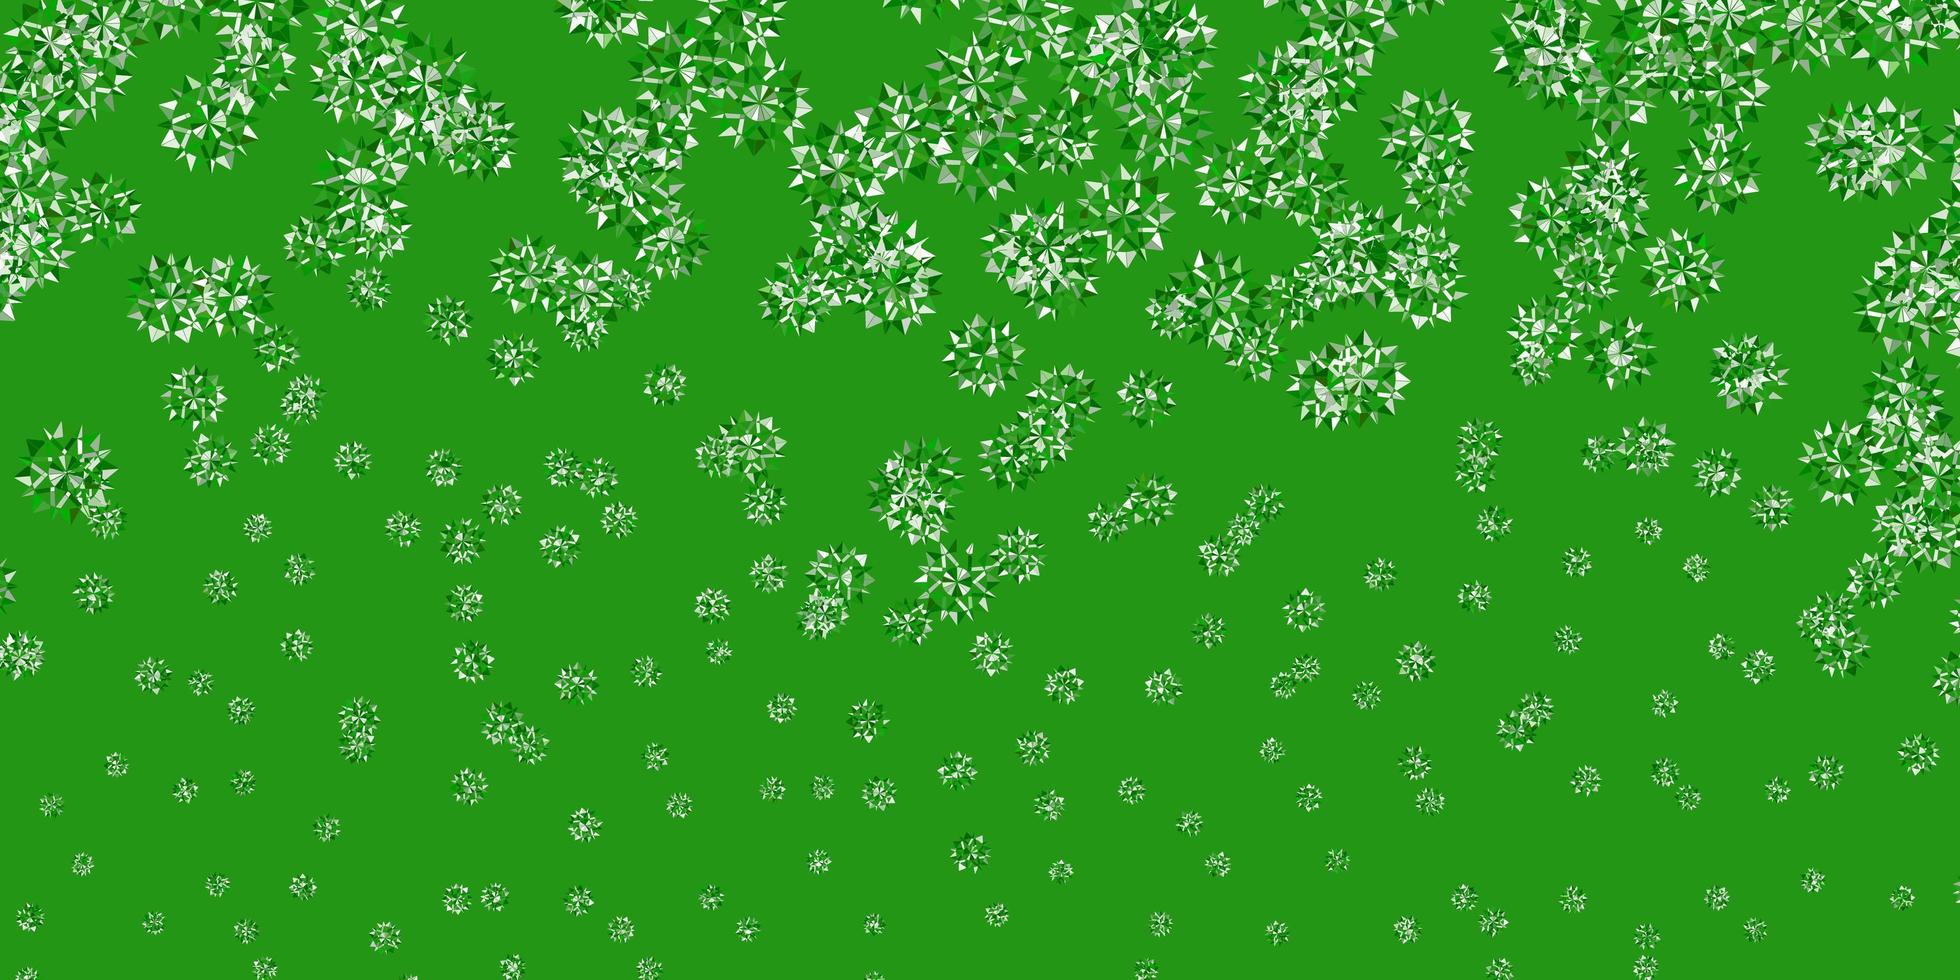 padrão de vetor verde claro com flocos de neve coloridos.